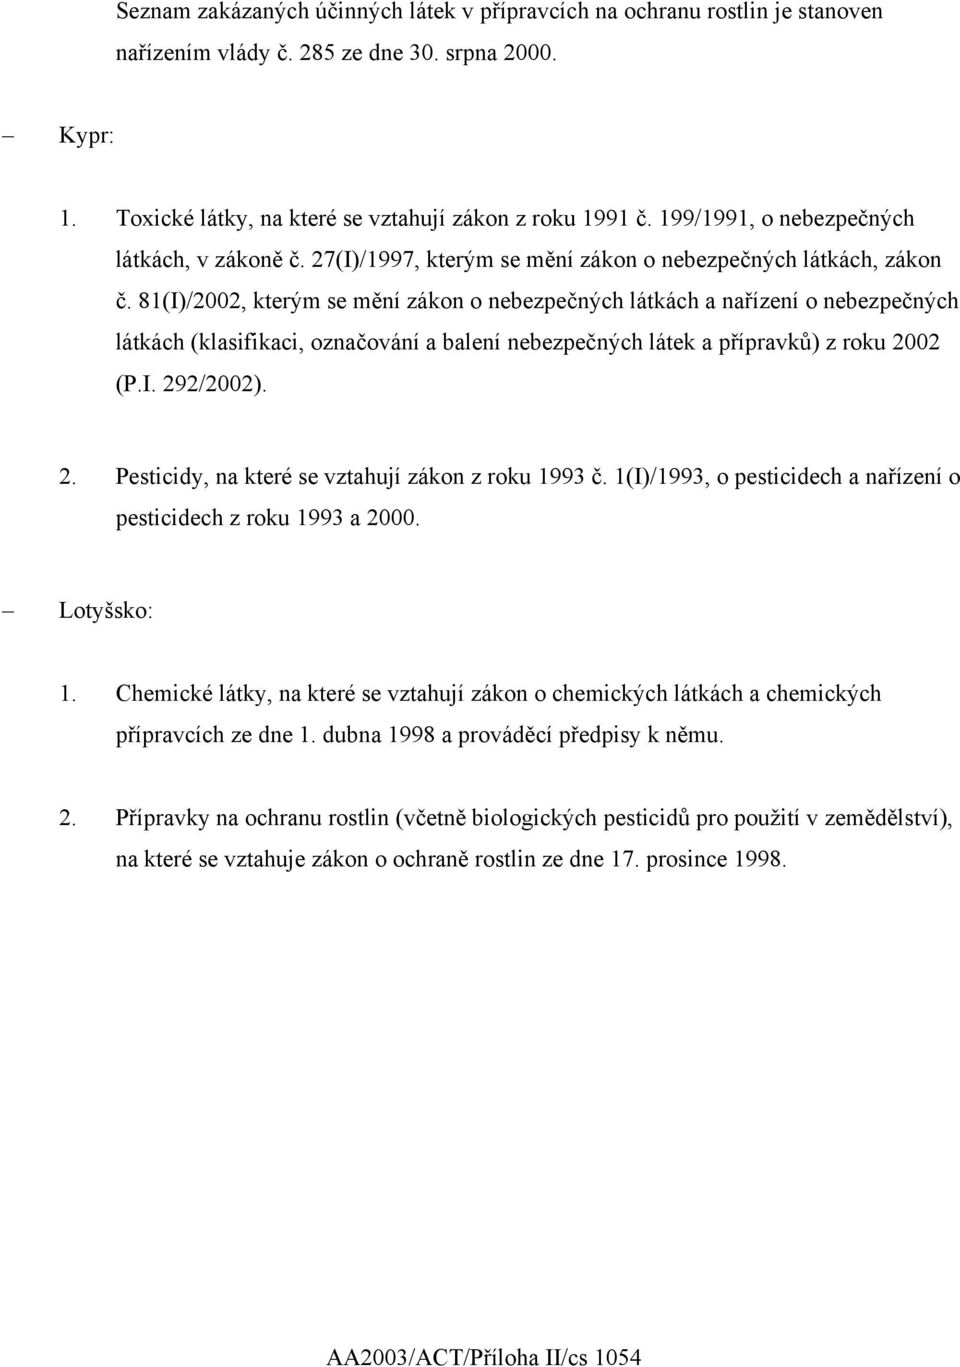 81(I)/2002, kterým se mění zákon o nebezpečných látkách a nařízení o nebezpečných látkách (klasifikaci, označování a balení nebezpečných látek a přípravků) z roku 20